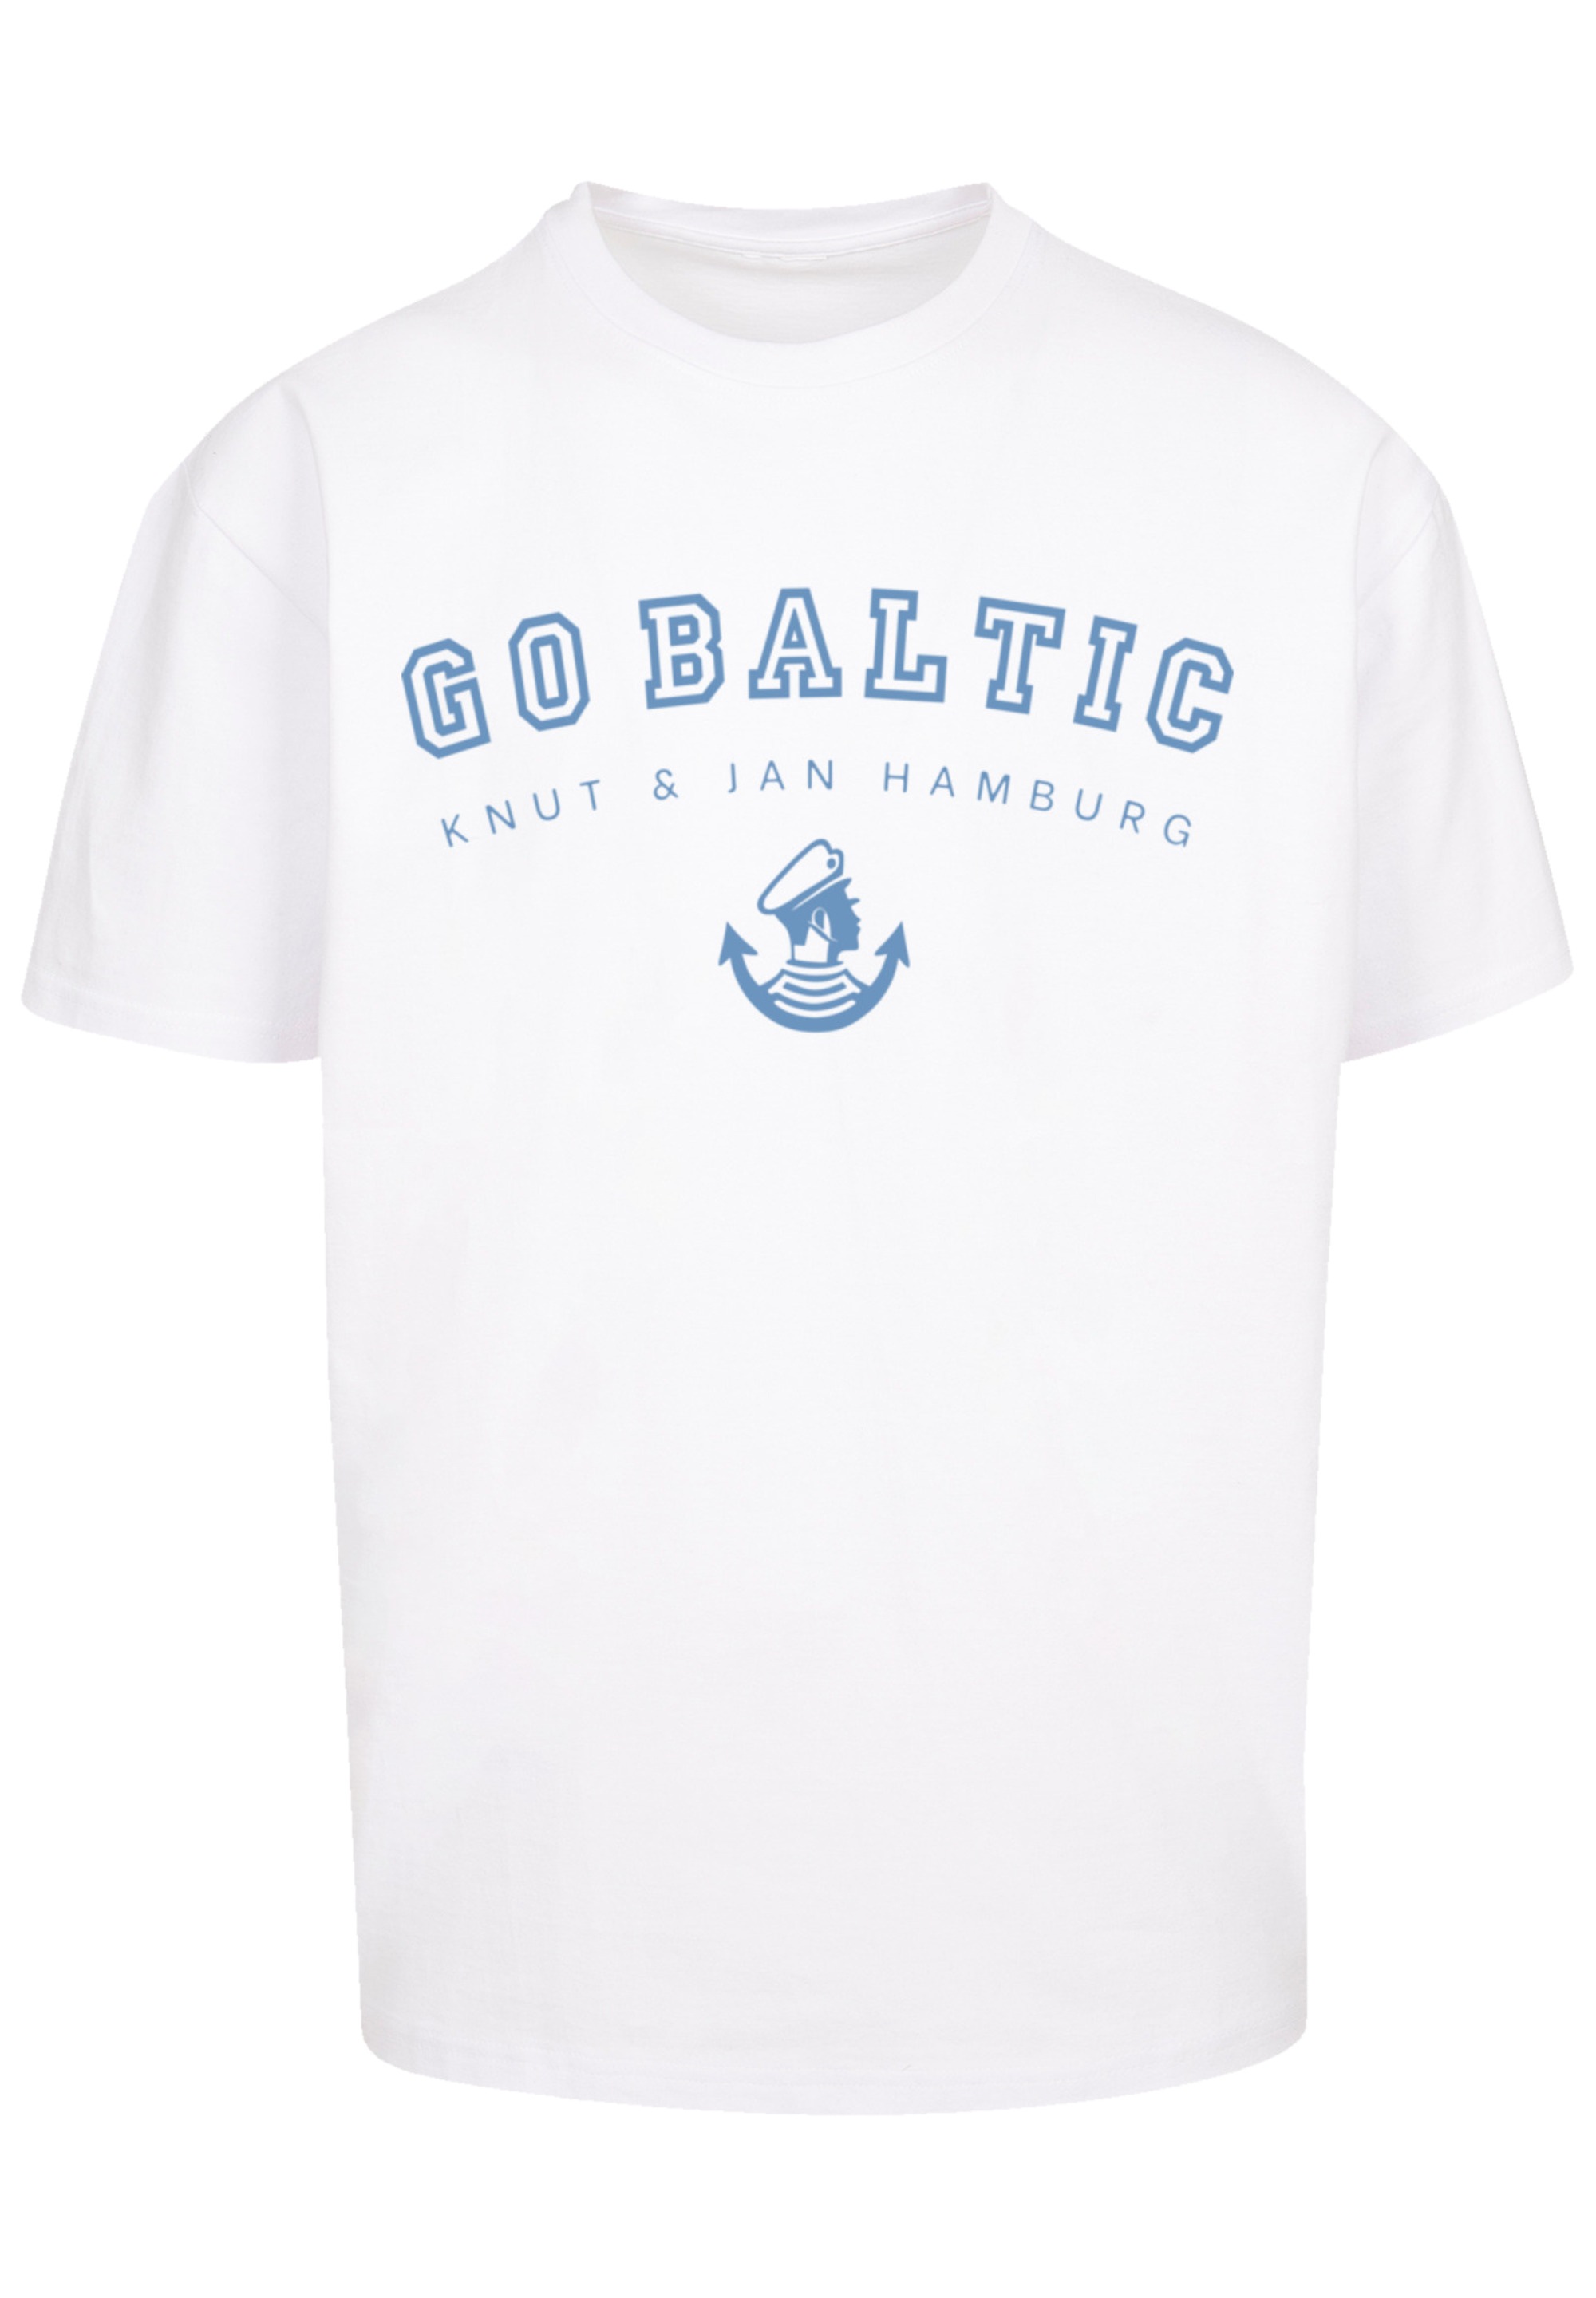 F4NT4STIC T-Shirt »Go Baltic Ostsee Knut & Jan Hamburg«, Print